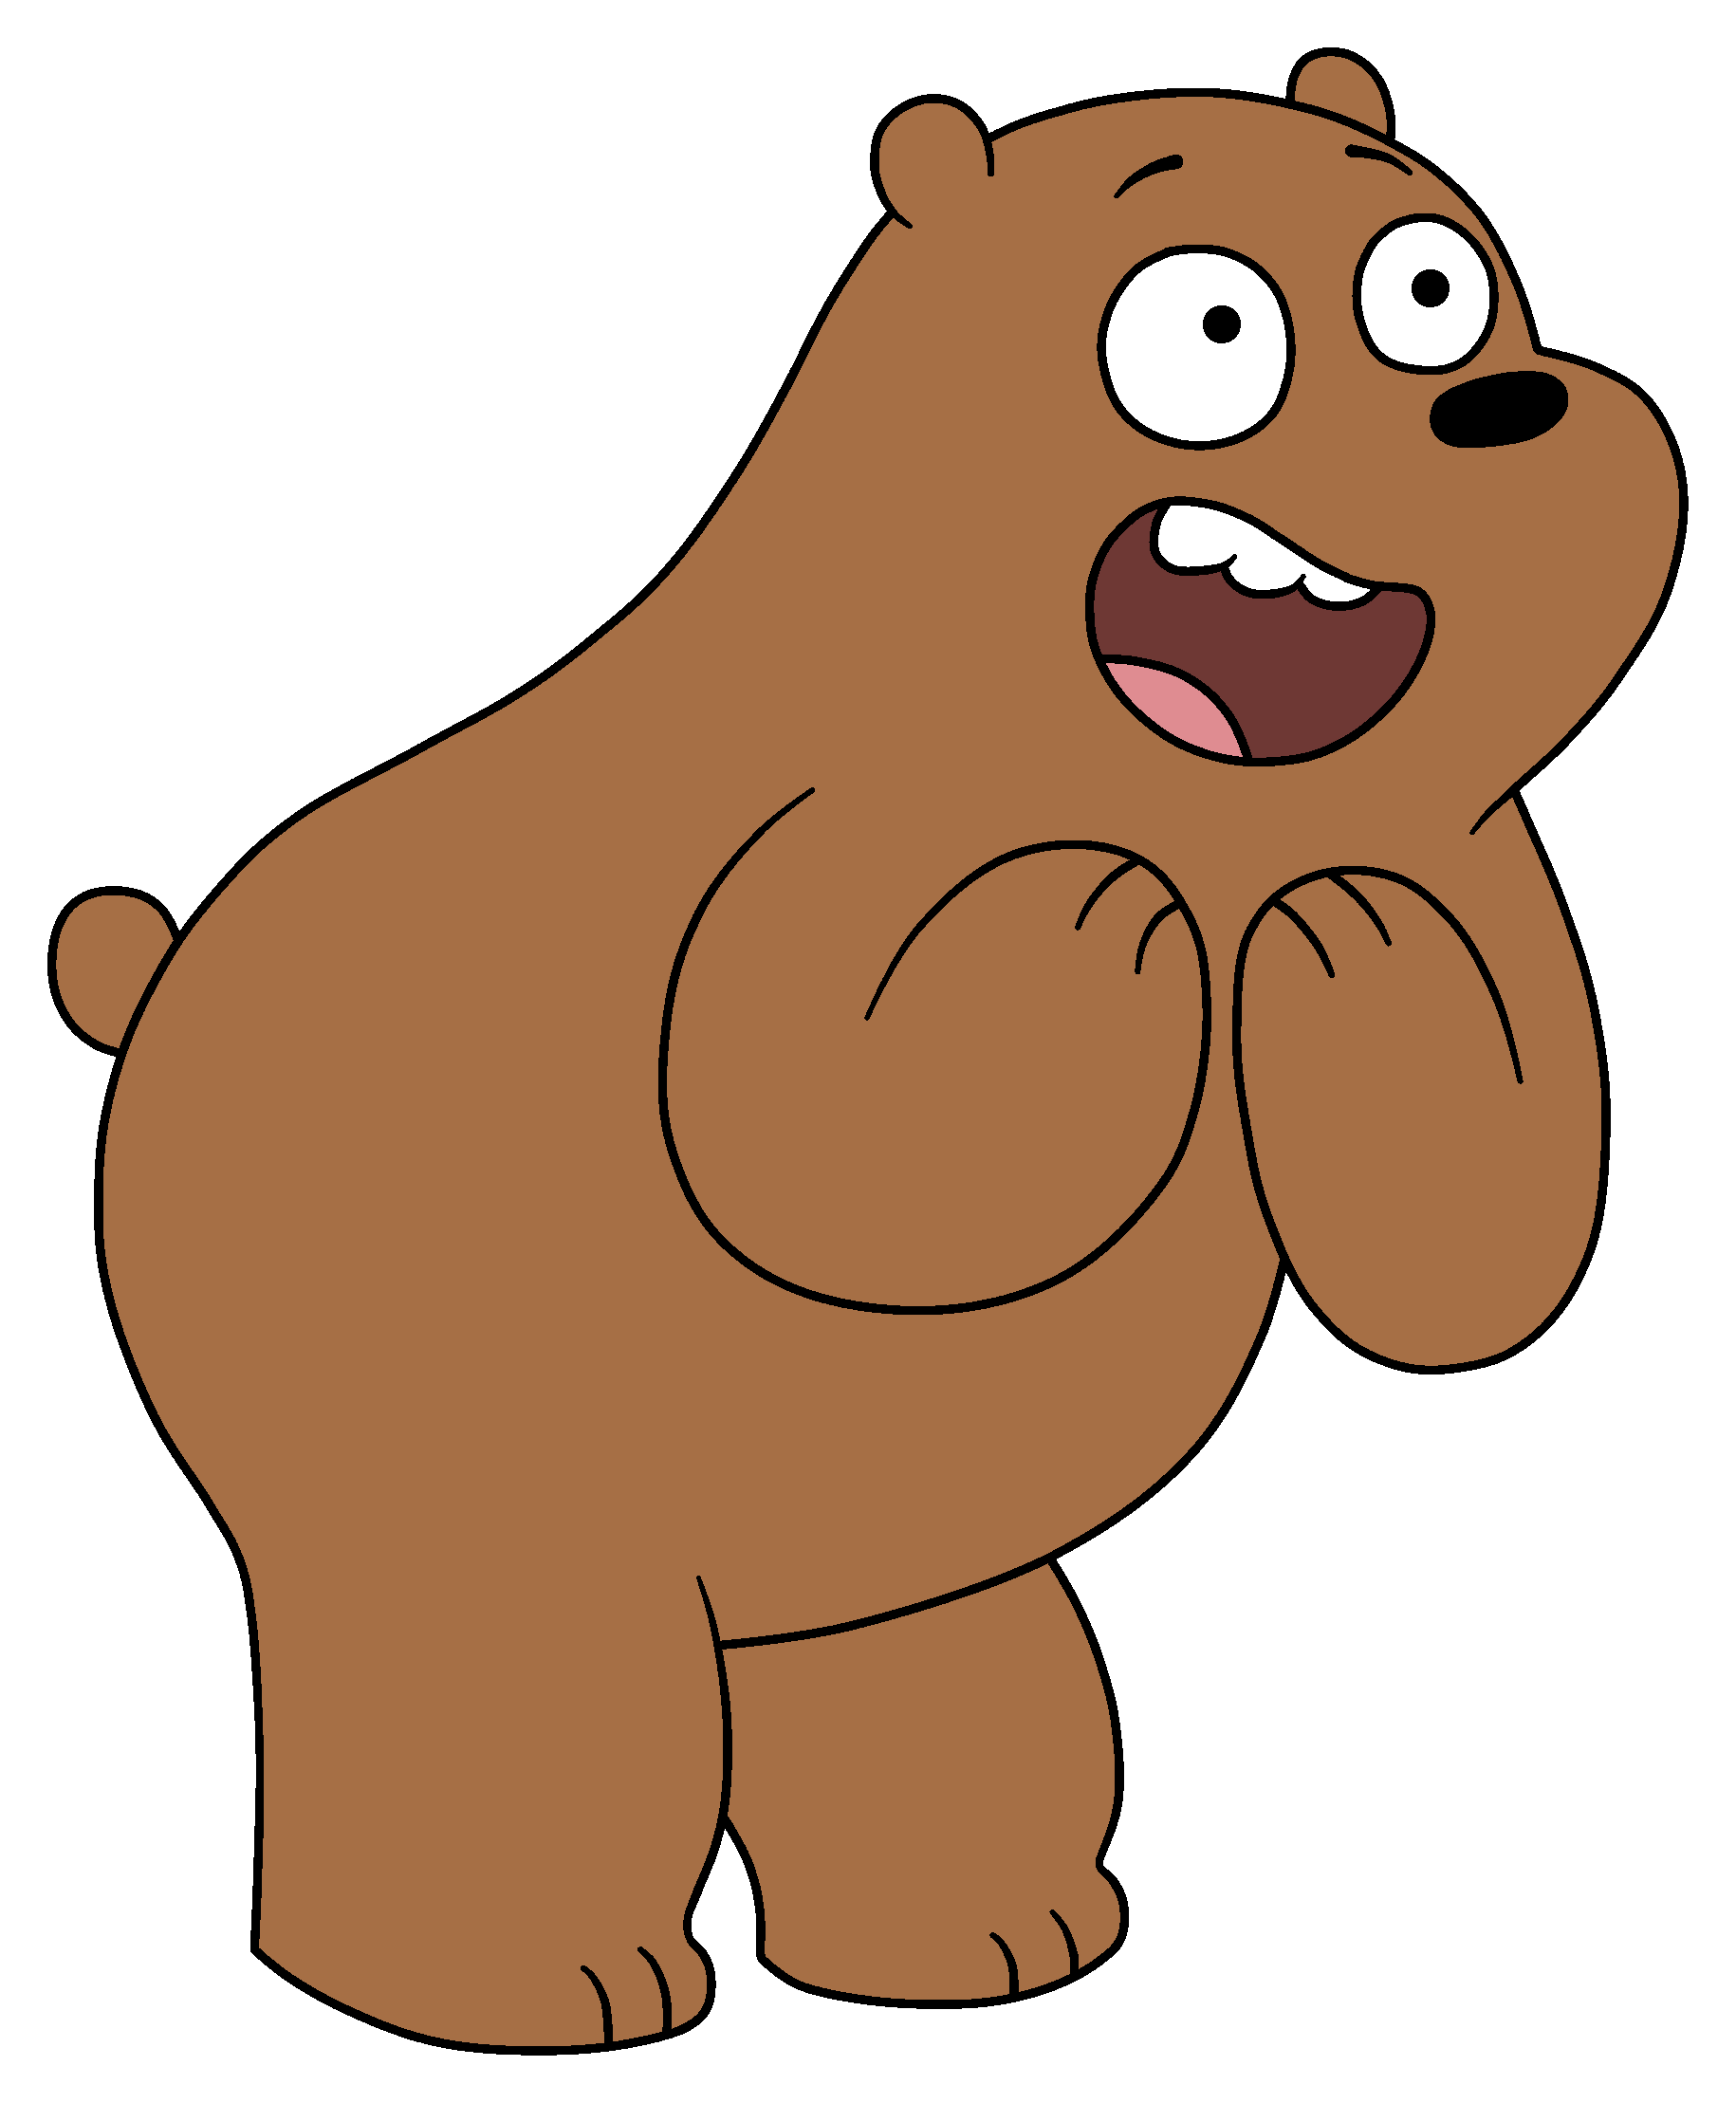 Gấu Xám: Đây là nhân vật được nhiều người yêu mến và luôn trở thành tâm điểm chú ý trong những bộ phim hoạt hình. Hãy cùng chiêm ngưỡng vẻ đẹp của chú gấu xám to lớn và mạnh mẽ trên màn hình kích thích khả năng tưởng tượng của bạn.